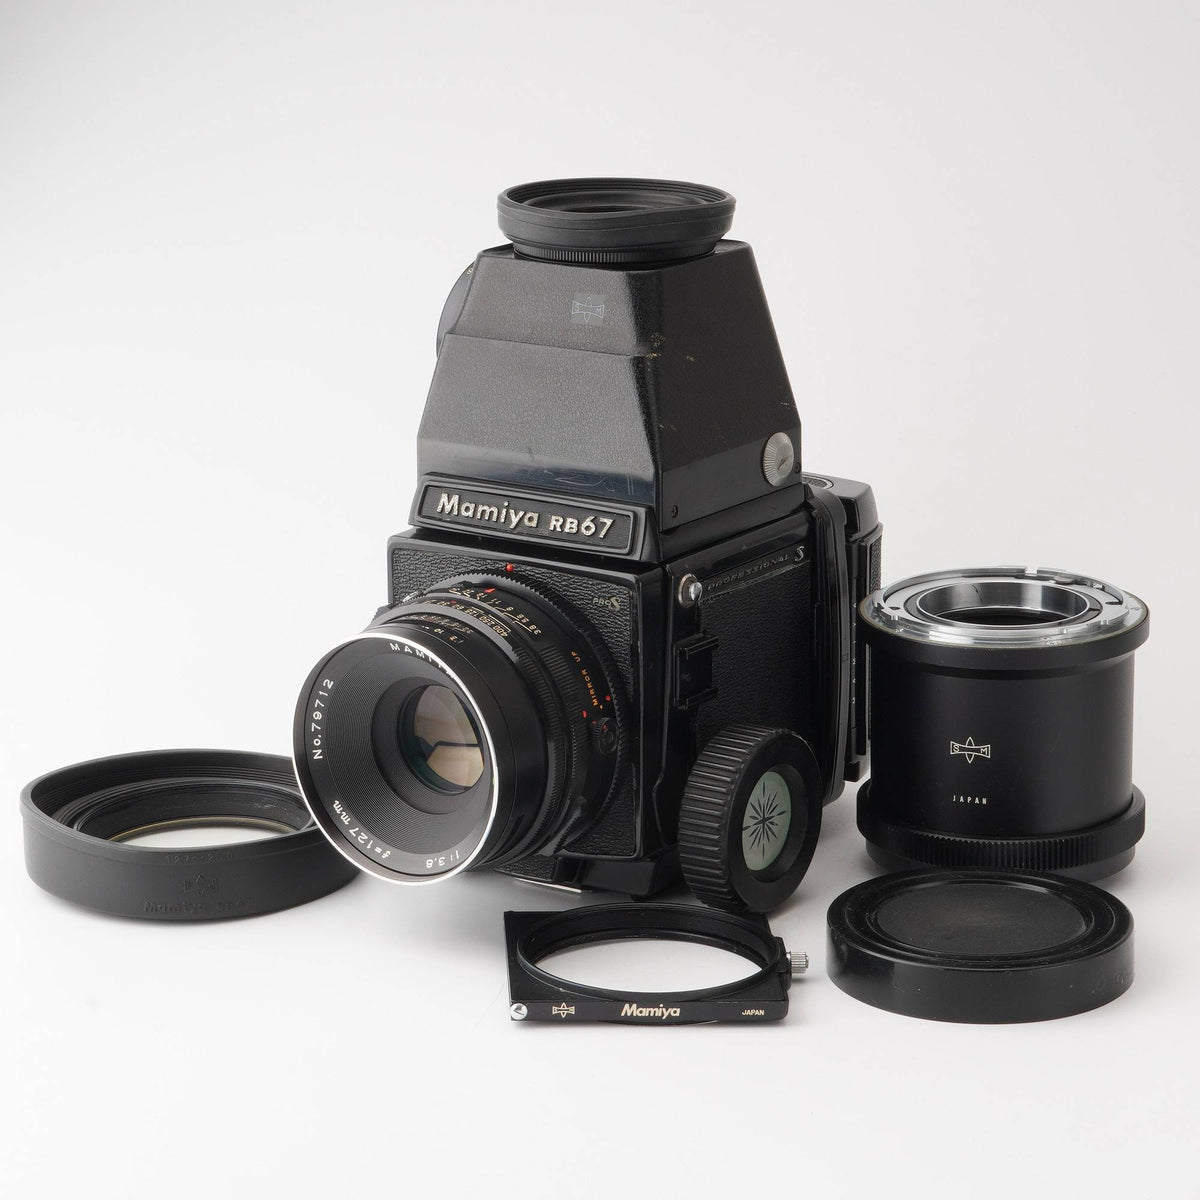 MAMIYA RB67 pro s 127mm f/3.8 レンズセットカメラ